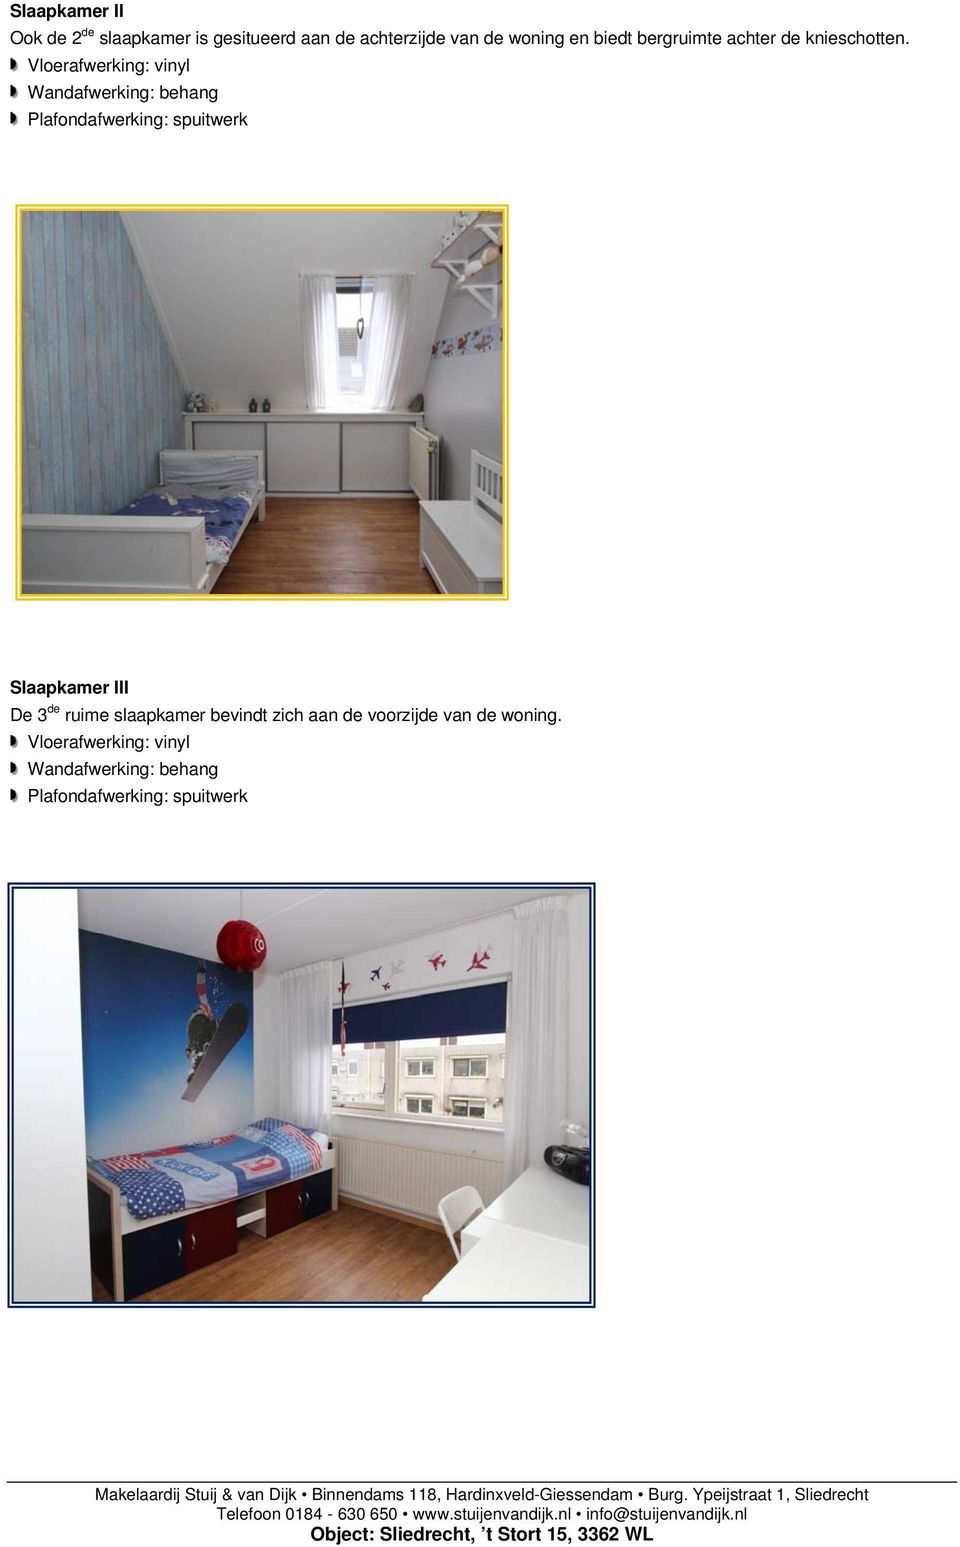 Vloerafwerking: vinyl Wandafwerking: behang Plafondafwerking: spuitwerk Slaapkamer III